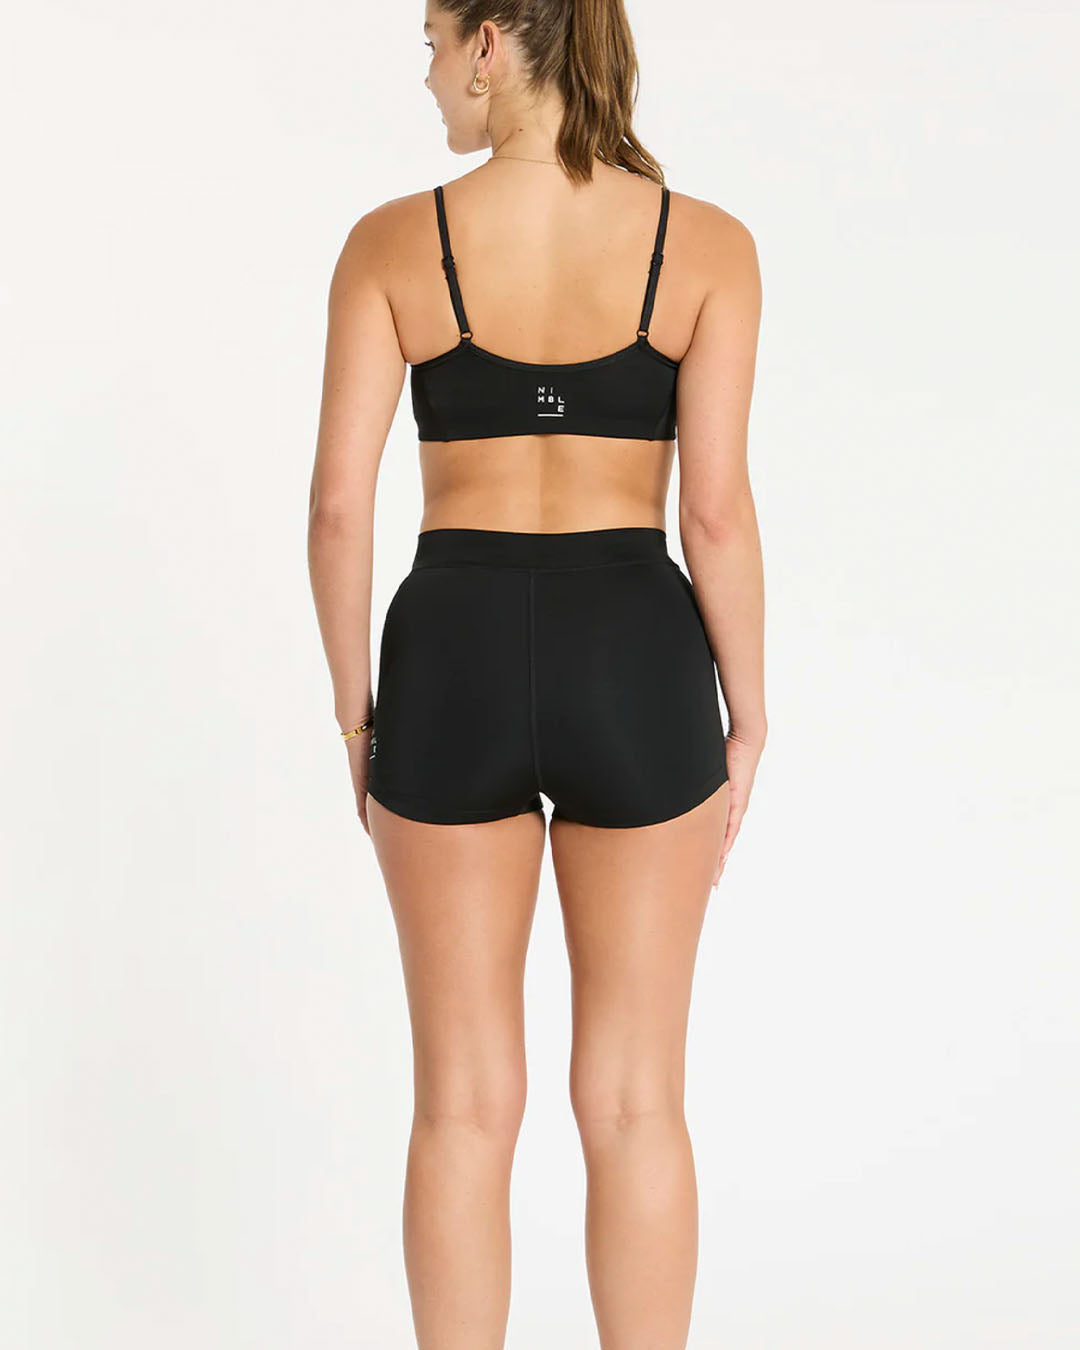 Sweat To Splash Boy Short - Black Activewear by Nimble - Prae Store